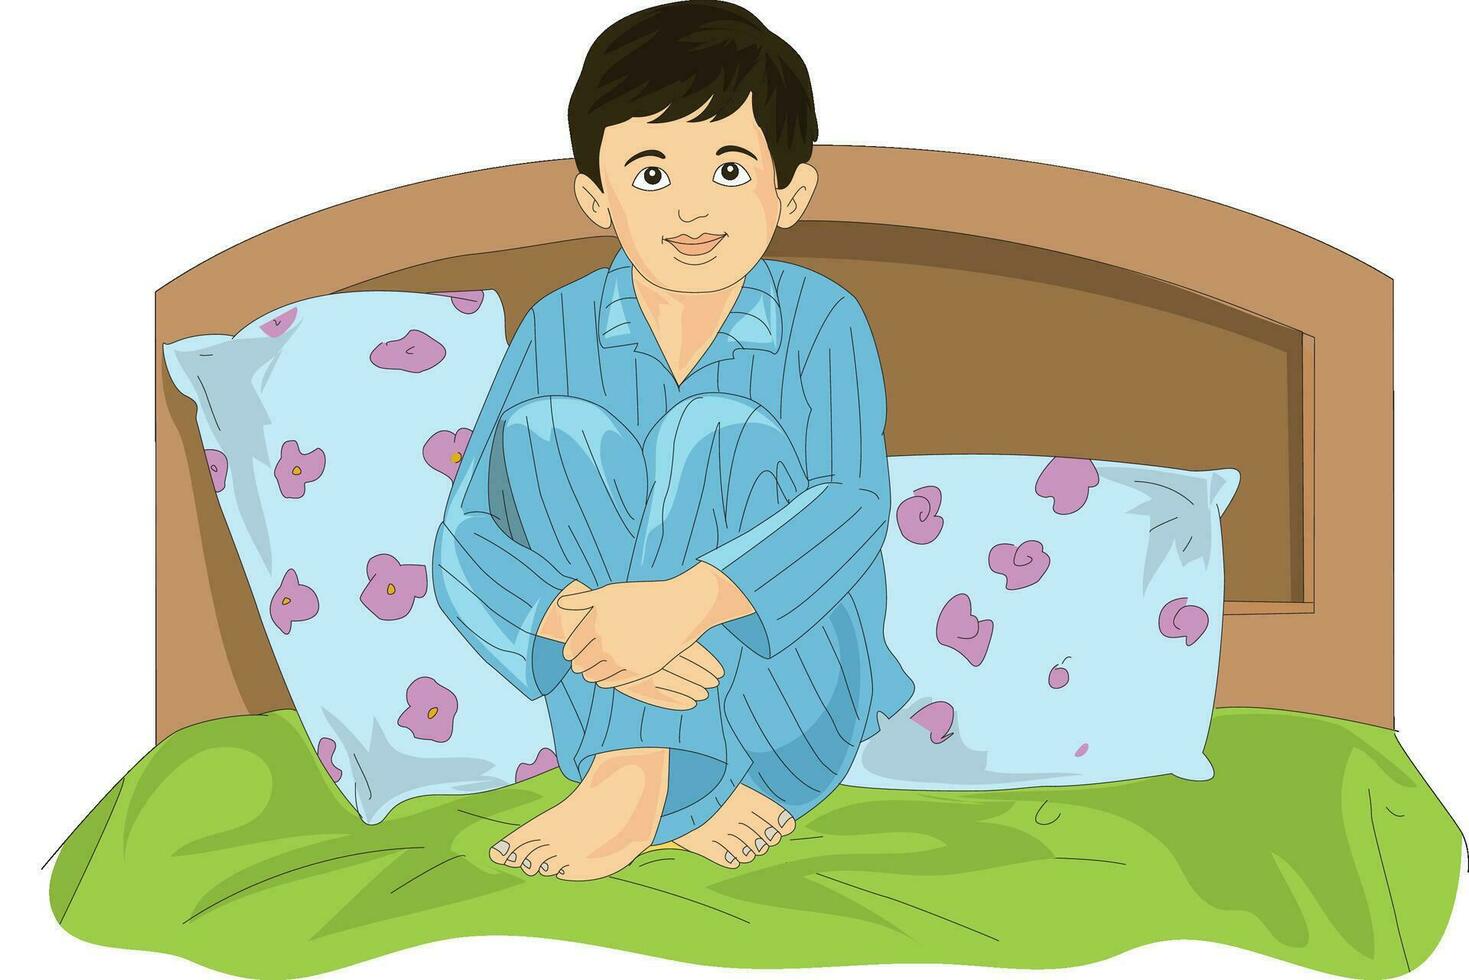 linda chico vistiendo un noche traje y sentado en cama vector